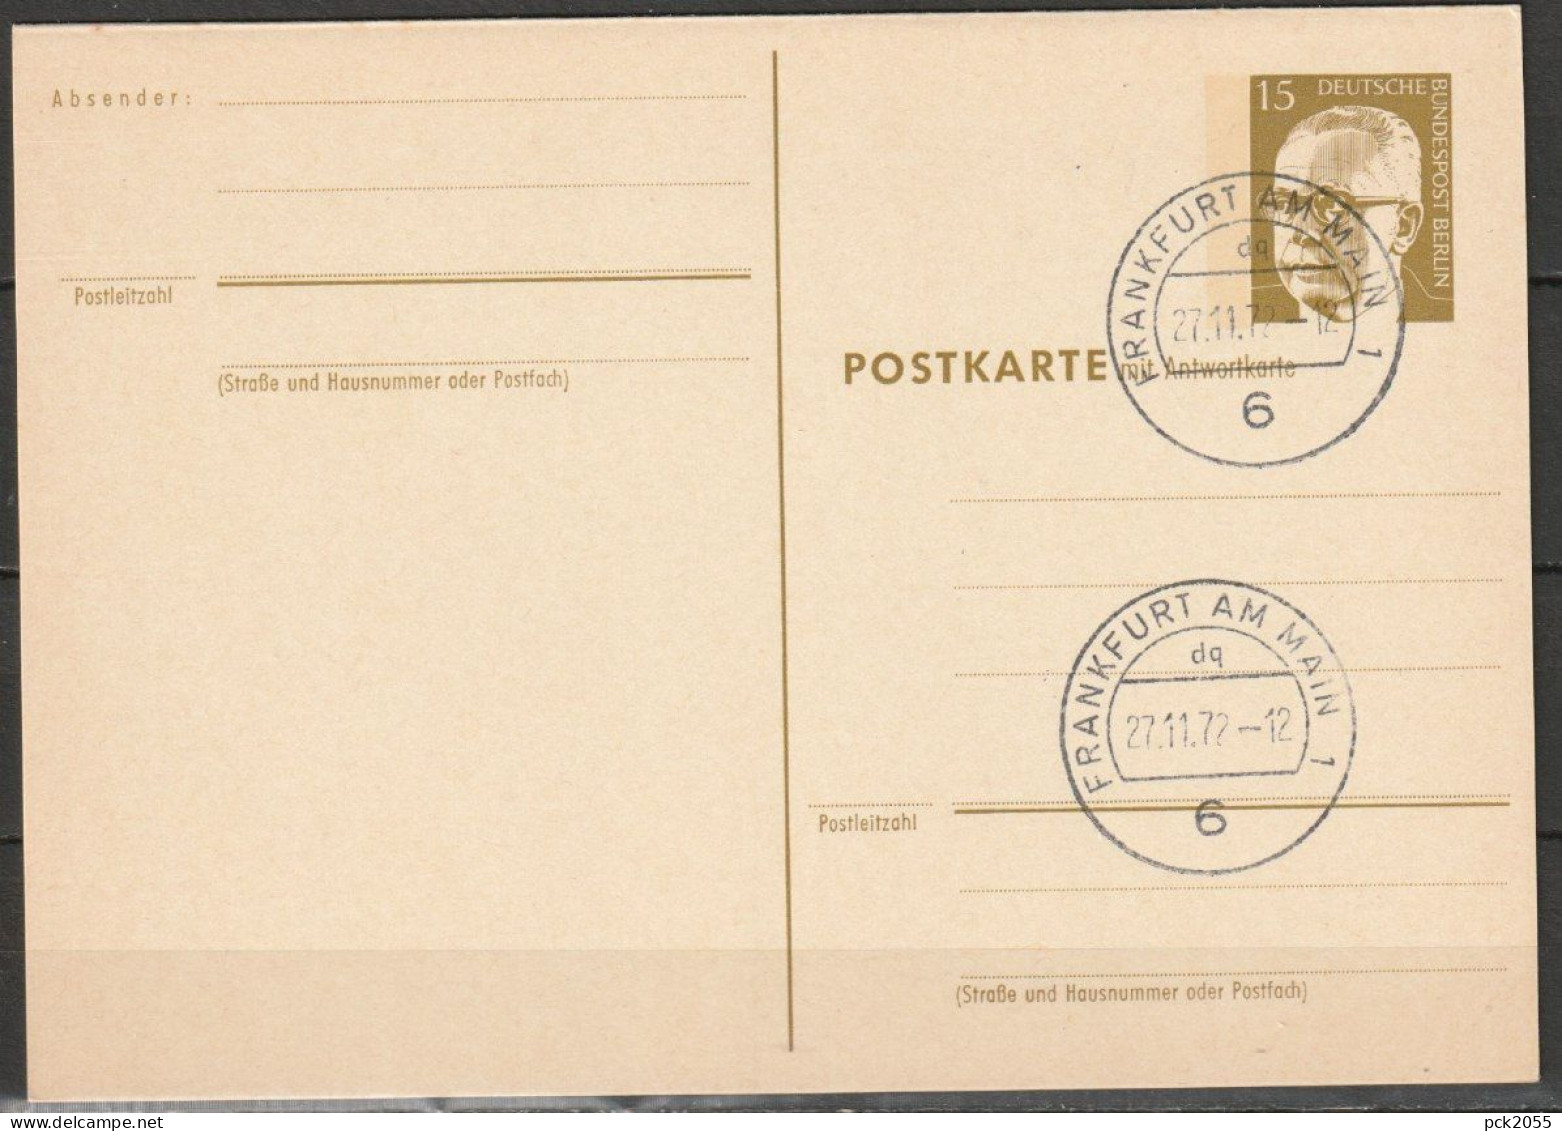 Berlin Ganzsache 1971/72 Mi.-Nr. P 87 Tagesstempel FRANKFURT 27.11.72  ( PK 302 ) - Postales - Usados